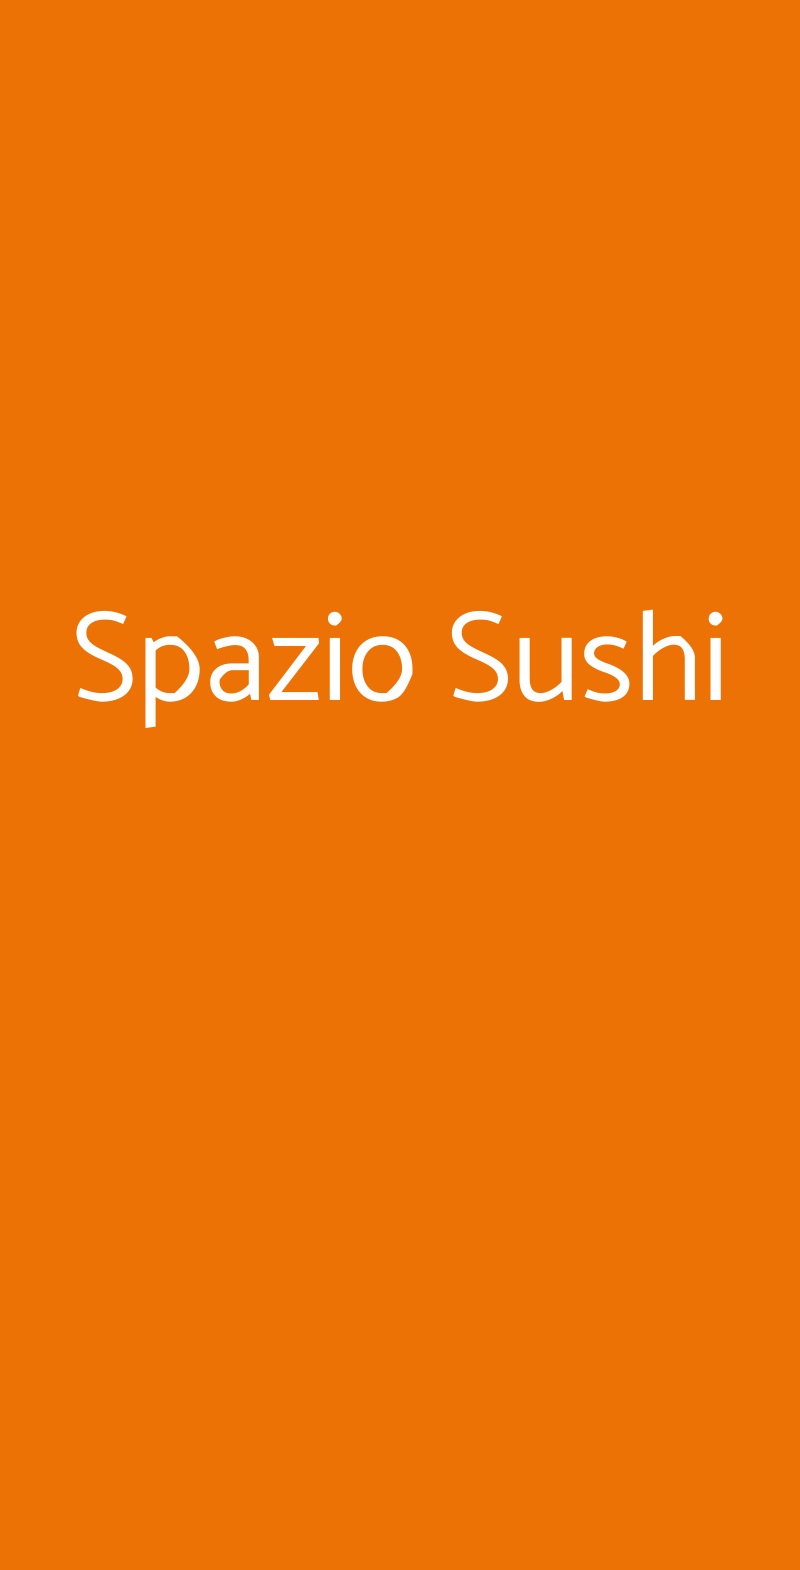 Spazio Sushi Milano menù 1 pagina